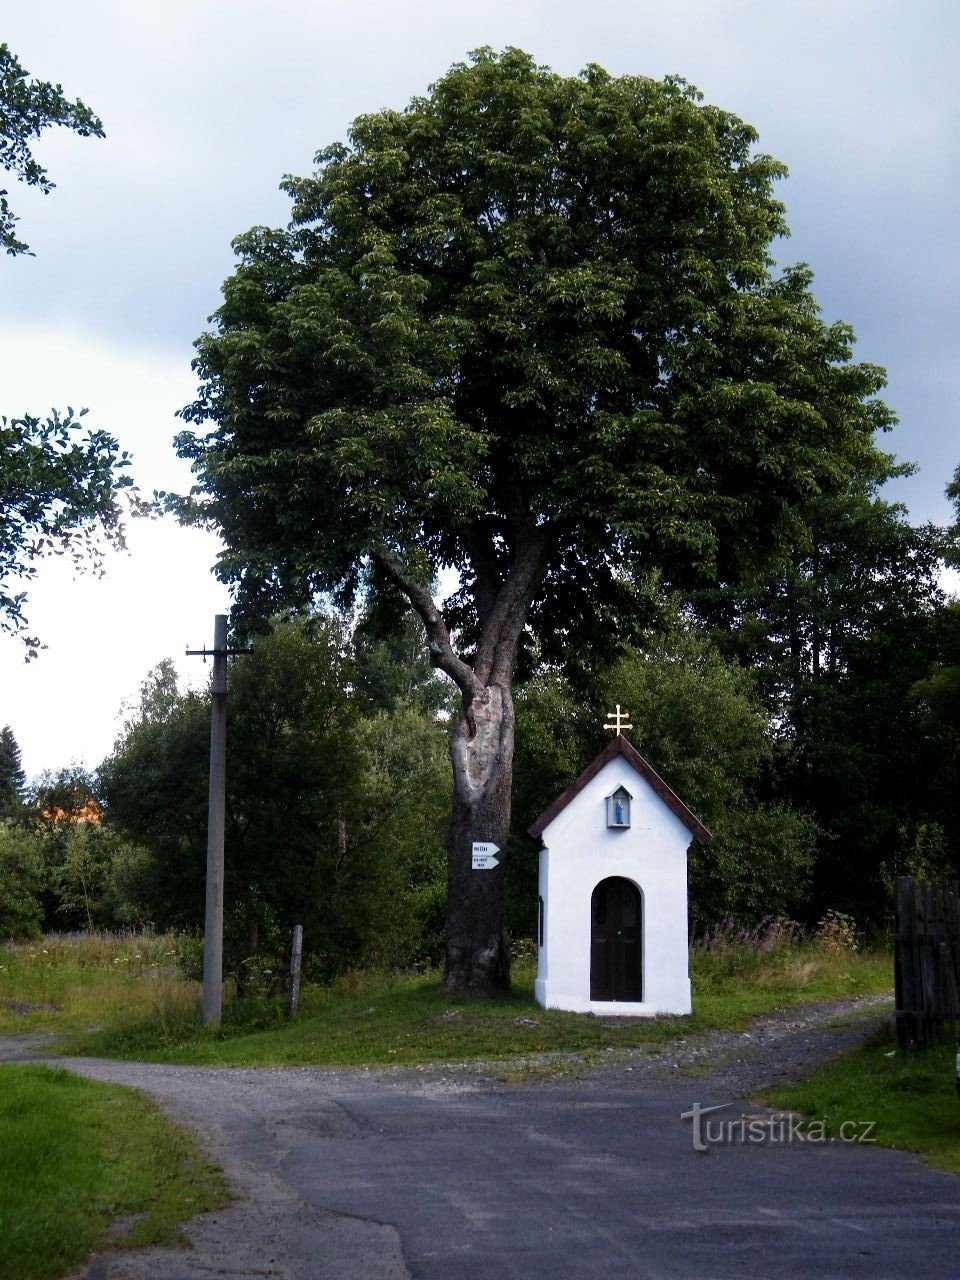 nhà nguyện ở Horní Blatna